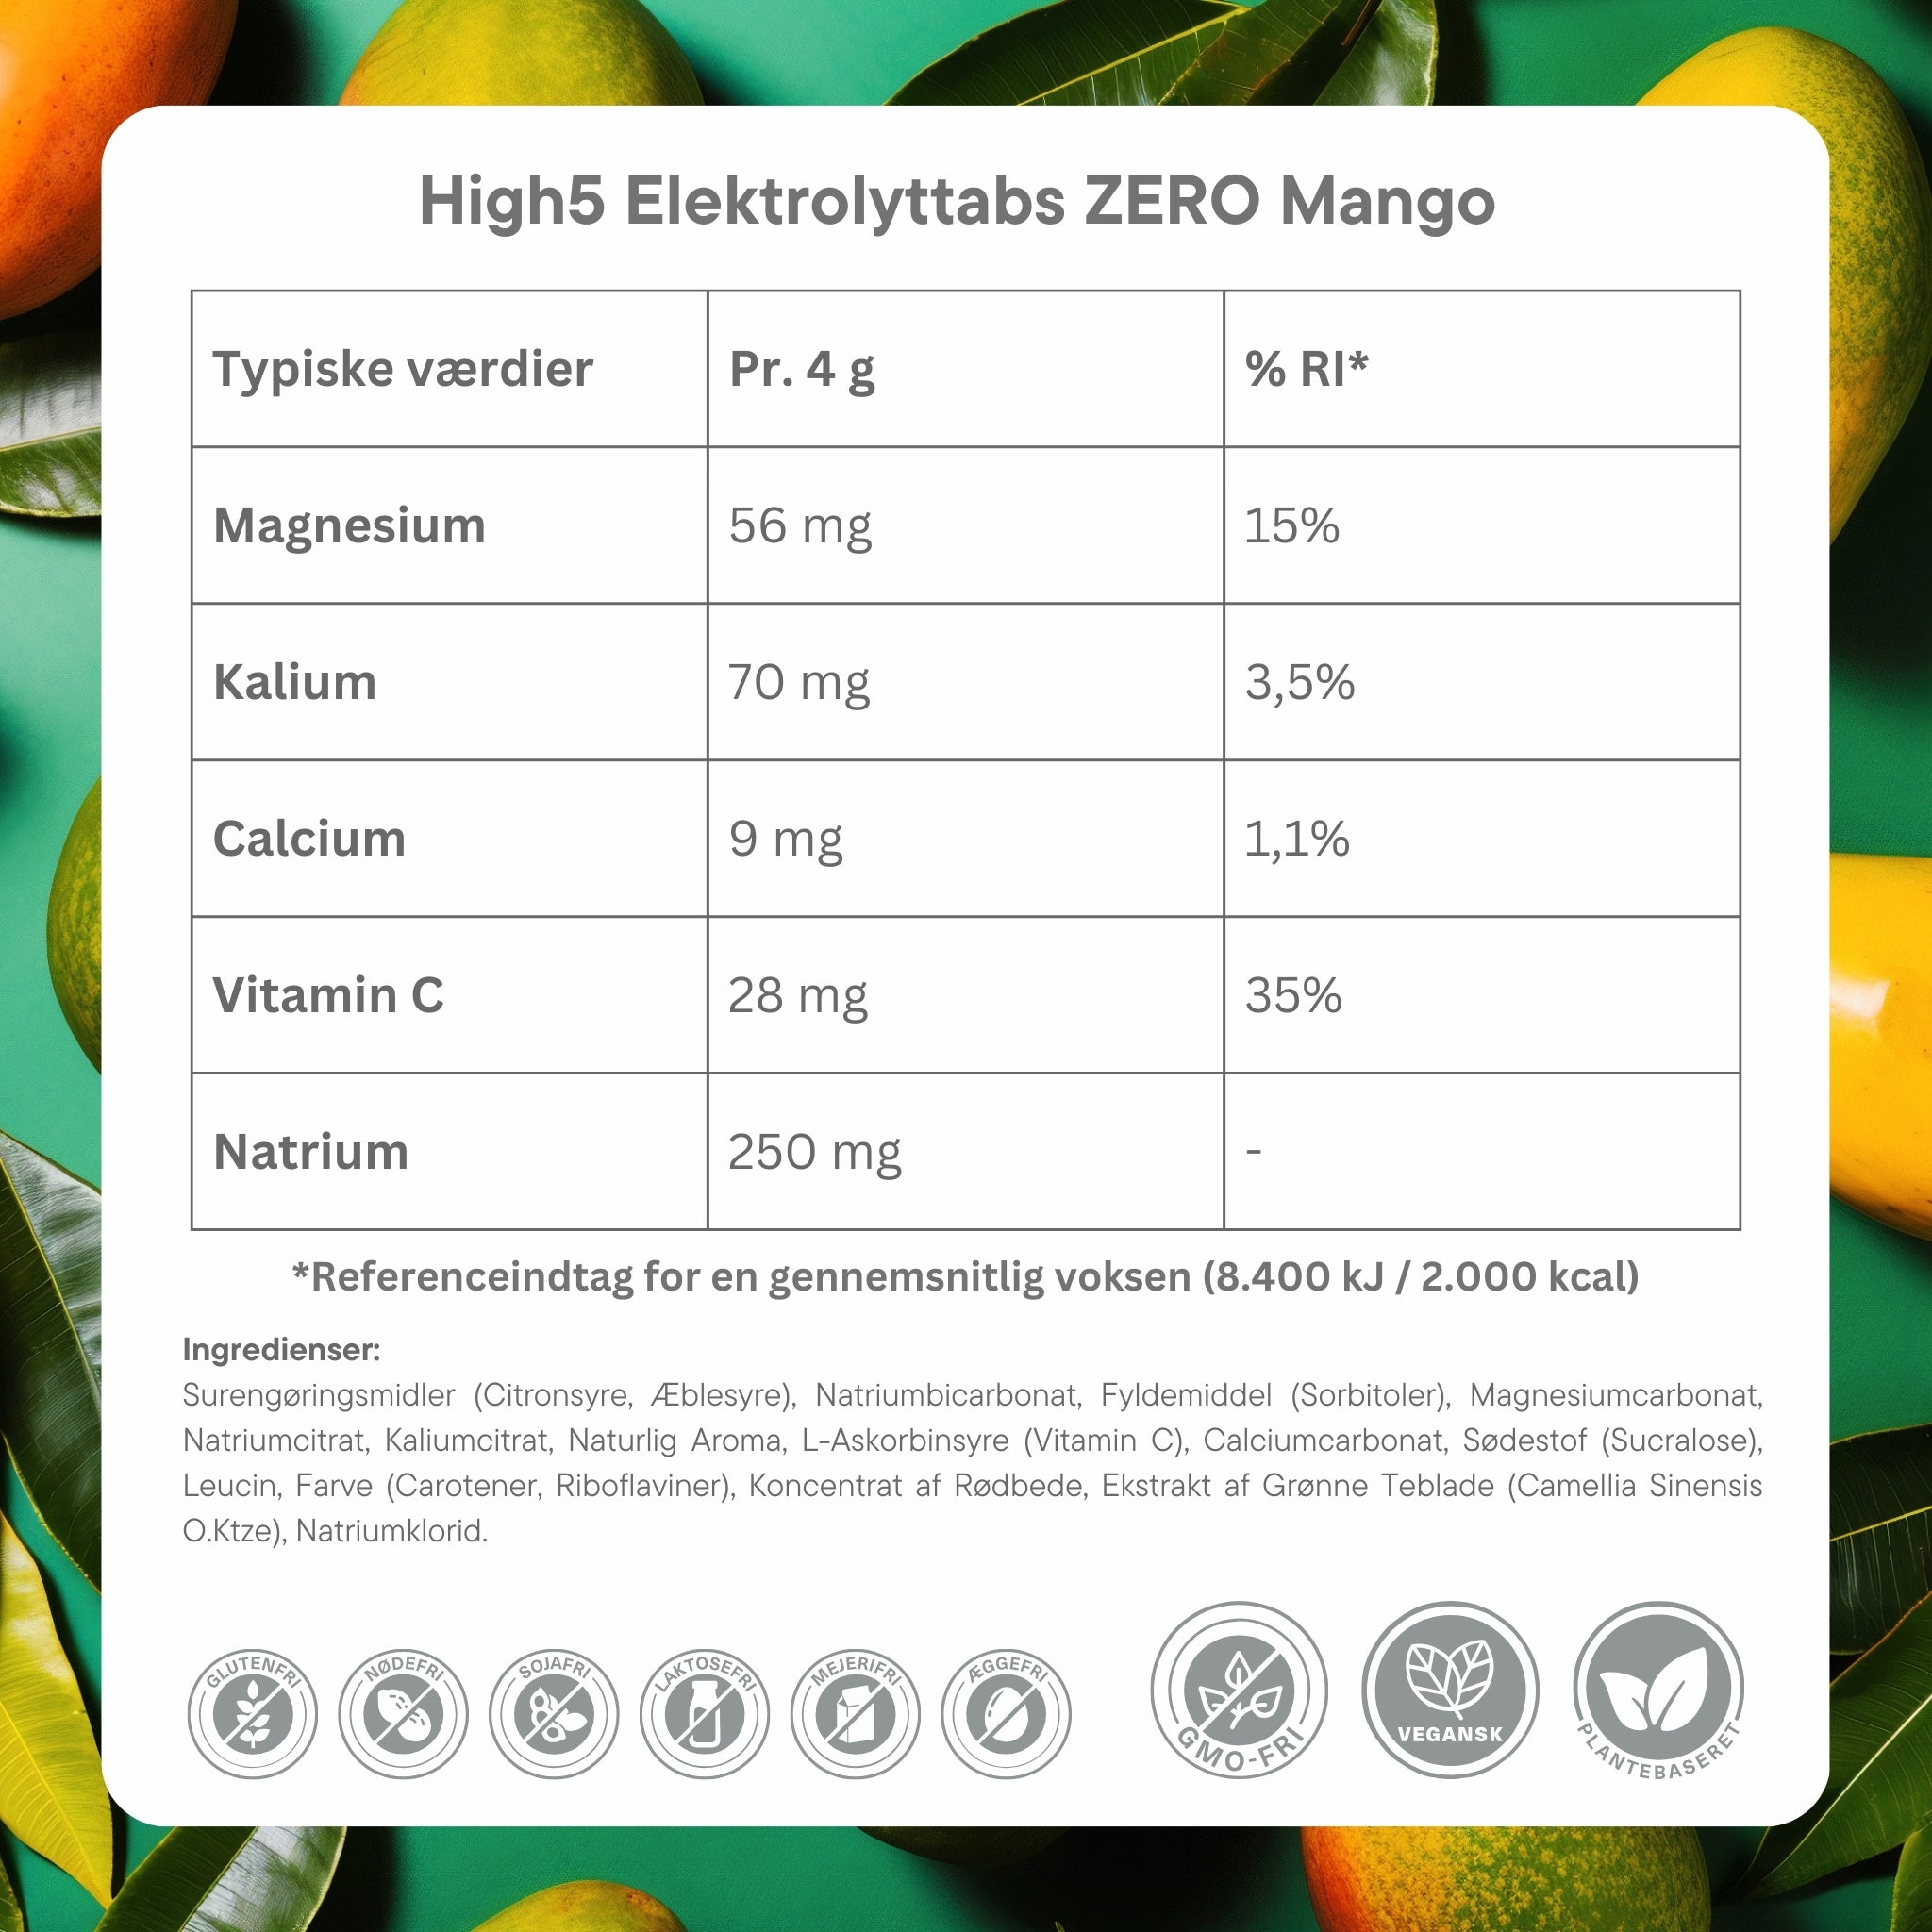 High5 Elektrolyttabs ZERO Mango - Ingredient dk